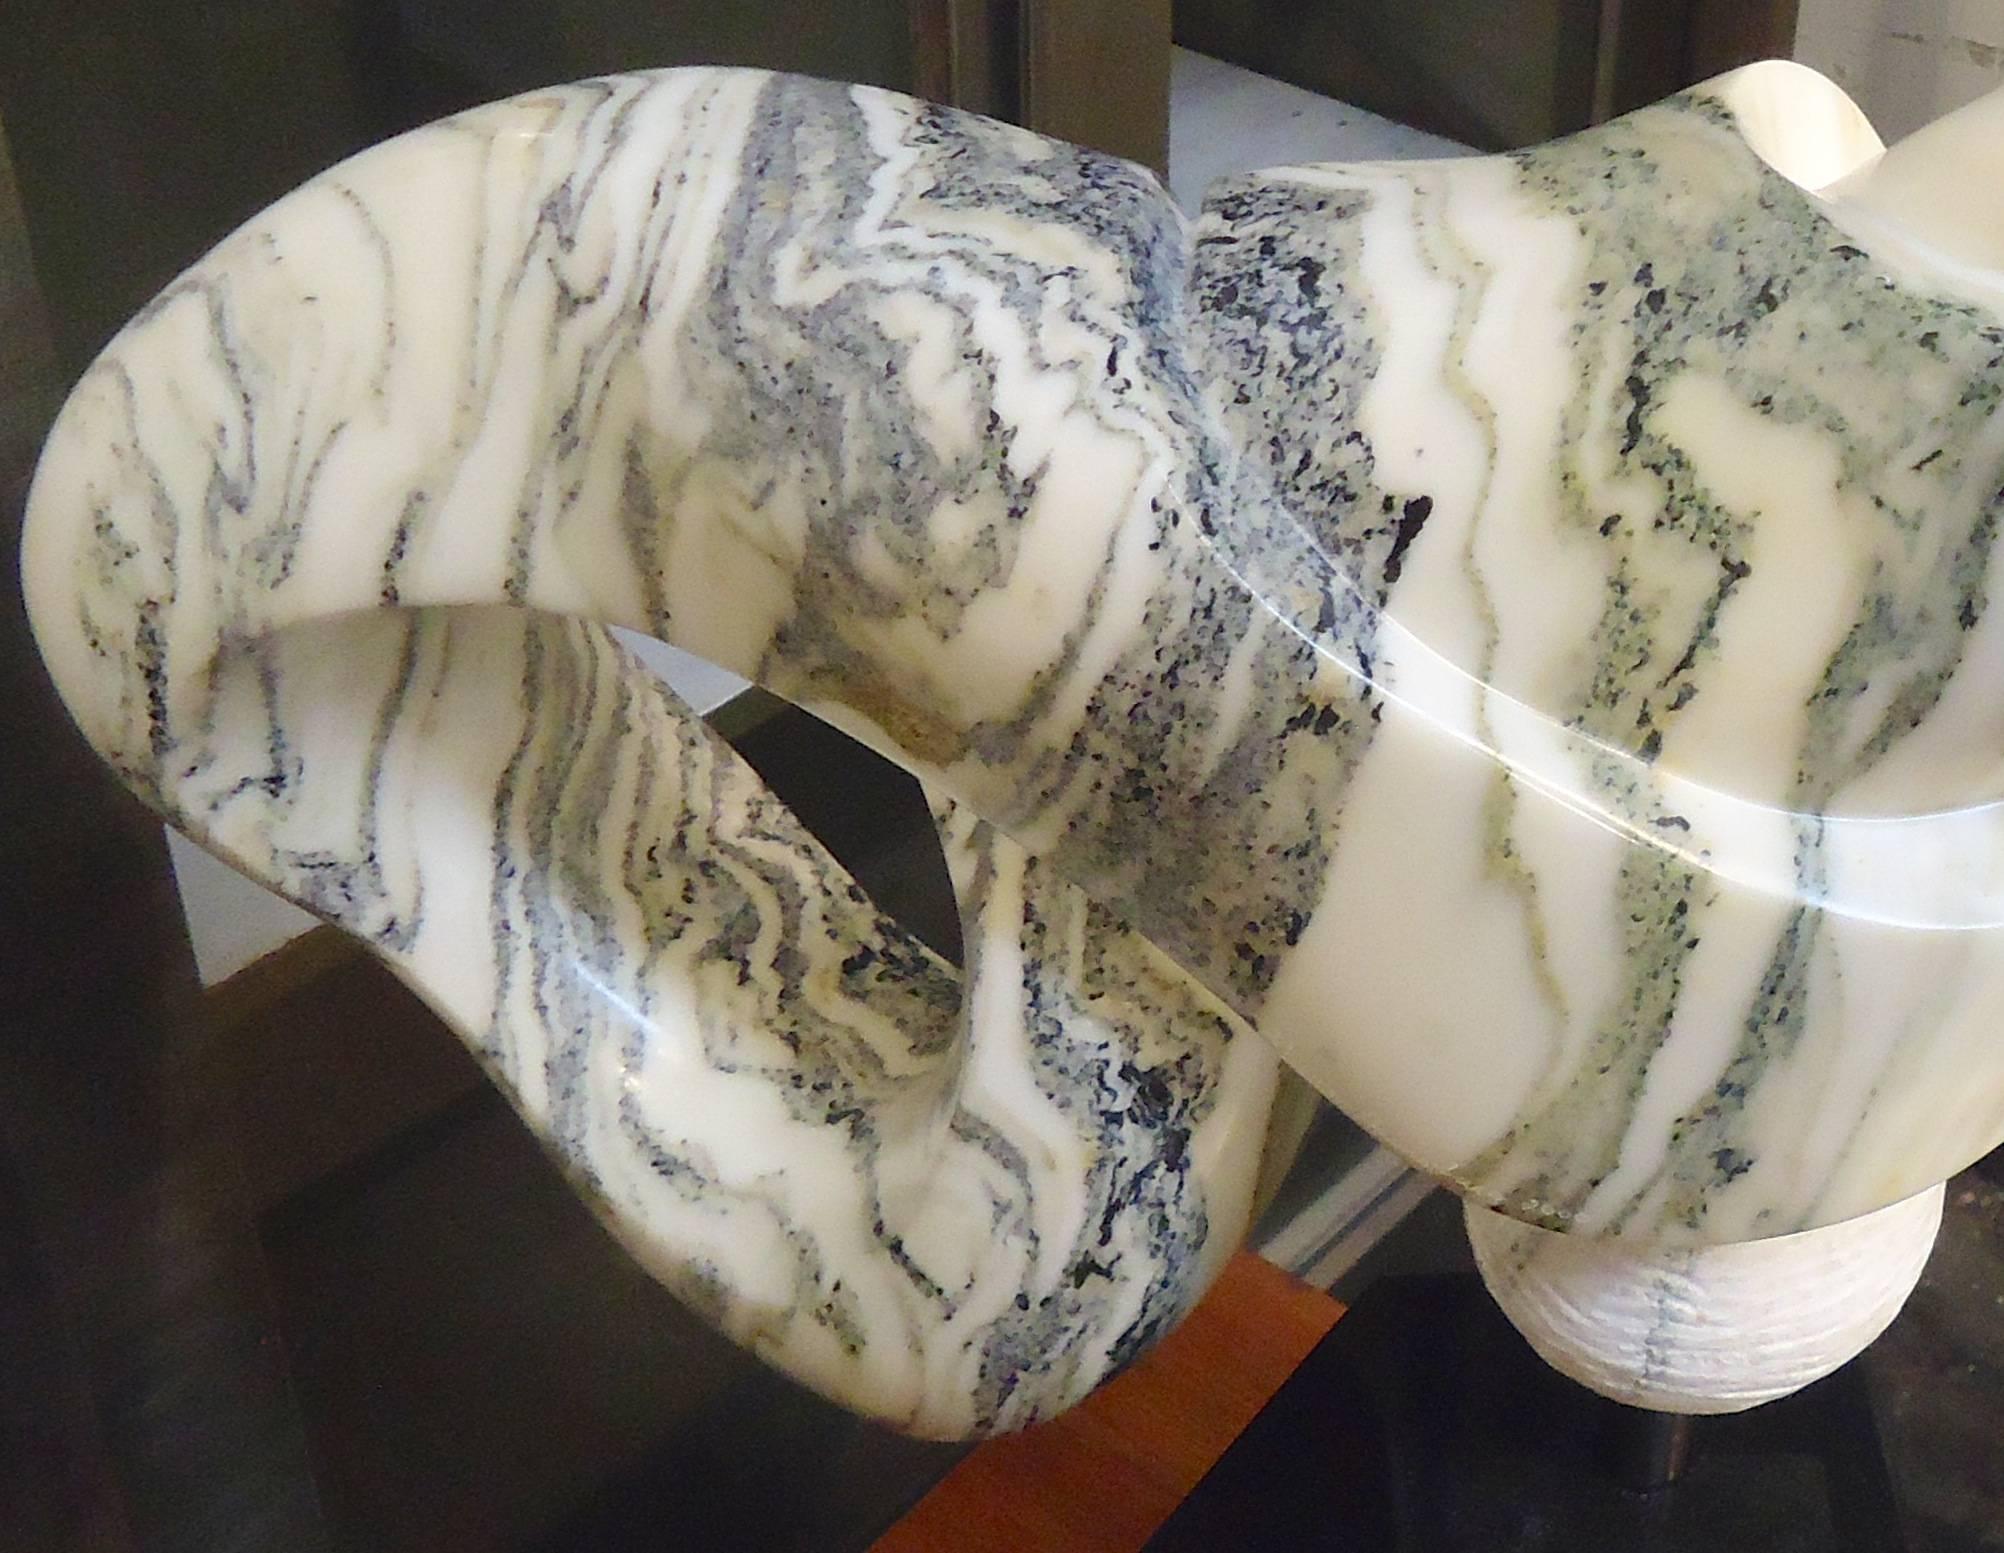 Magnifique œuvre d'art en marbre sculpté en forme de nœud ou de symbole de l'infini. Signé par l'artiste américaine Sharon Gainsburg. Il s'agit d'une sculpture très lourde placée sur un socle en marbre noir massif.

(Veuillez confirmer la